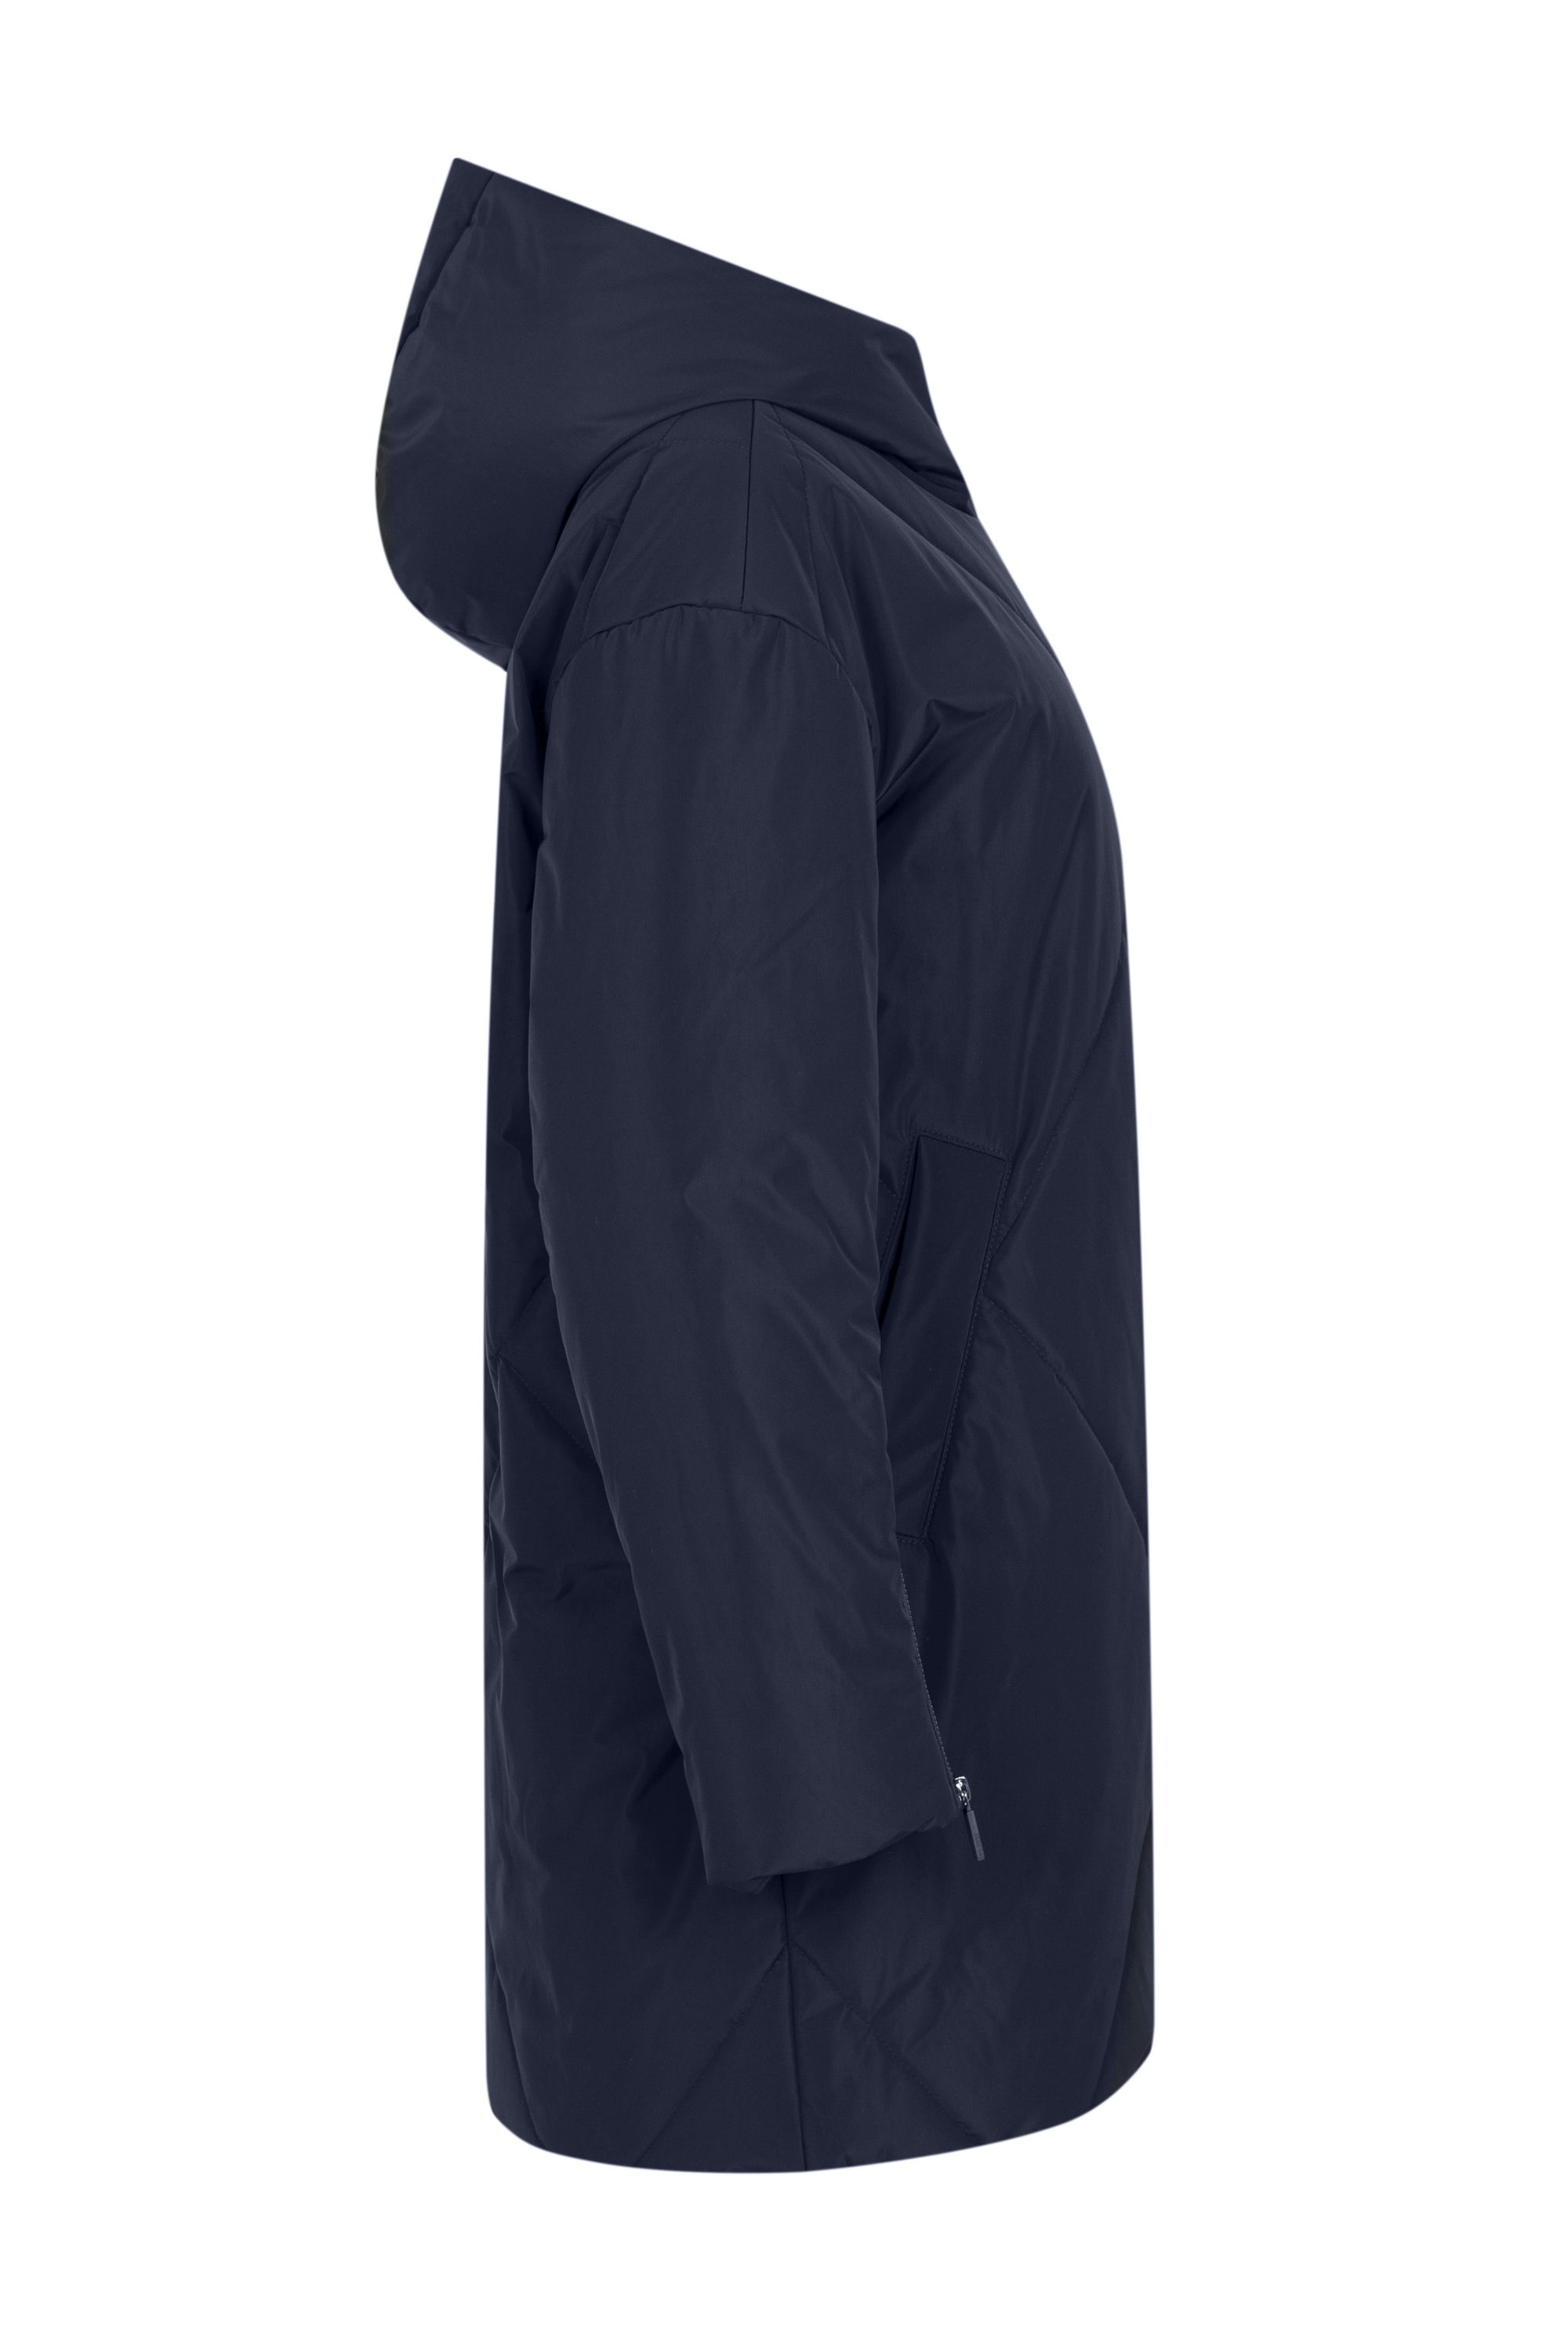 Пальто женское плащевое утепленное 5S-13035-1. Фото 7.